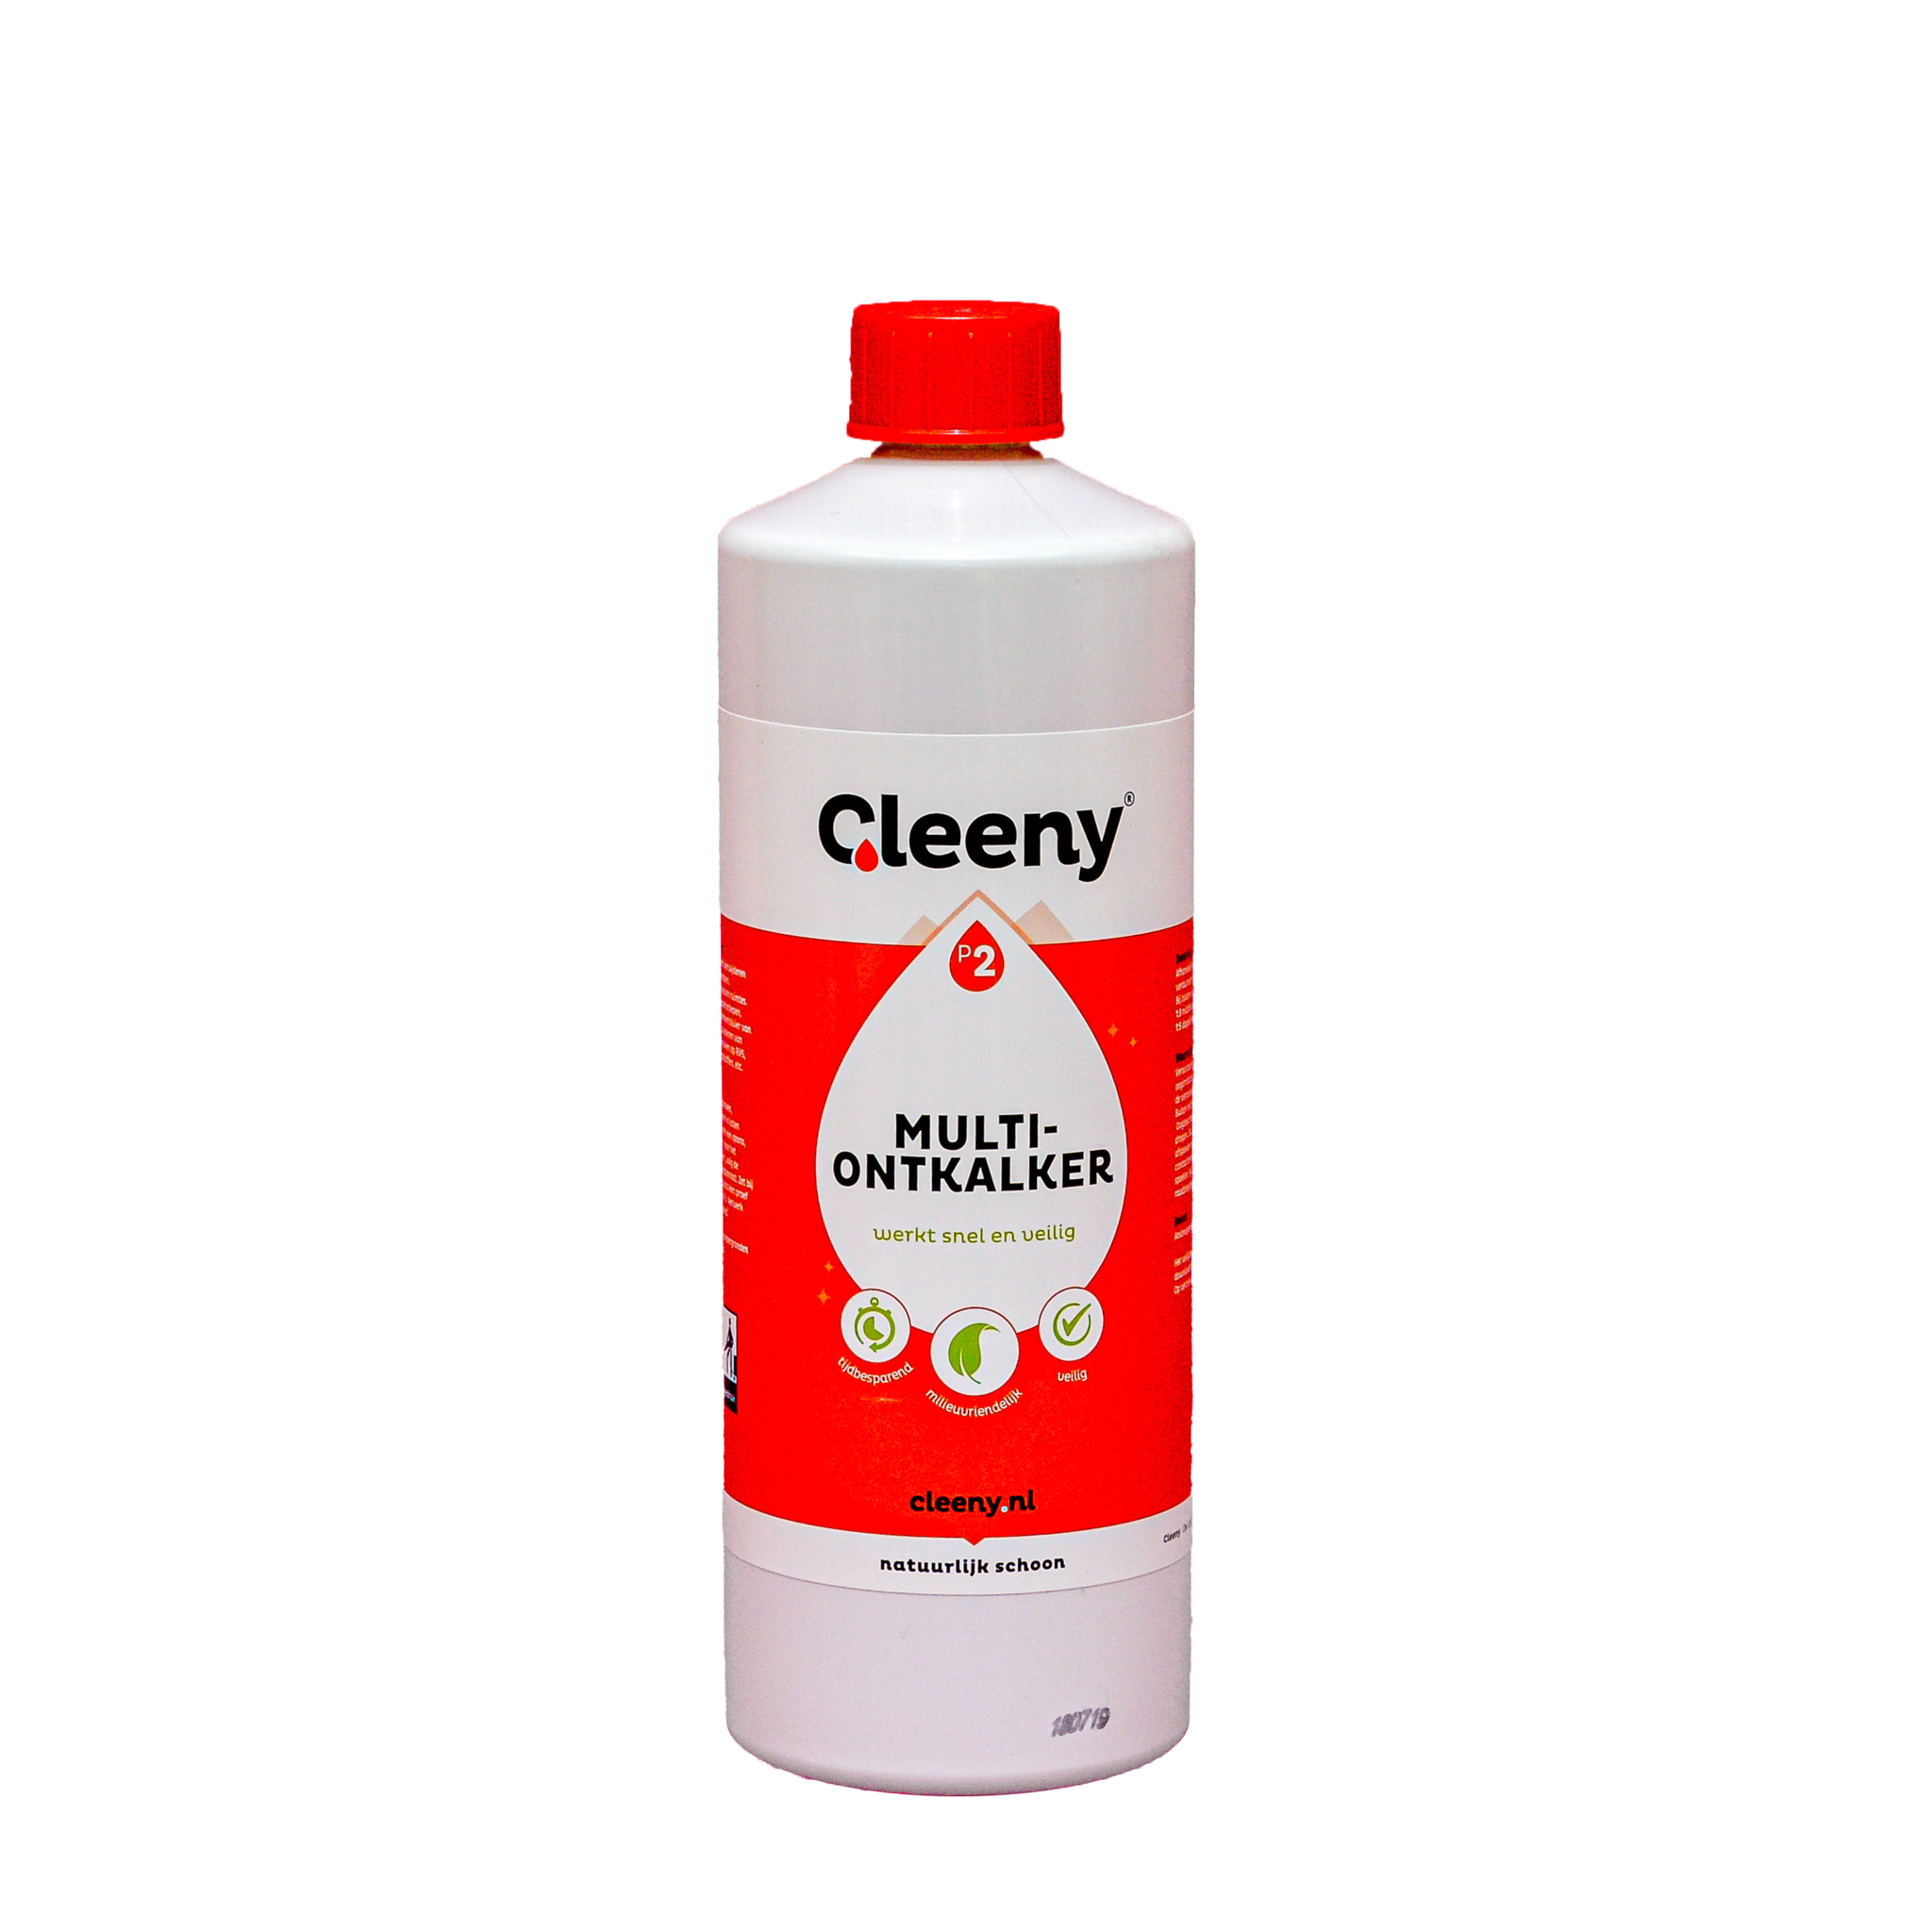 Cleeny Cleeny P2 Multi ontkalker 1 literfles concentraat